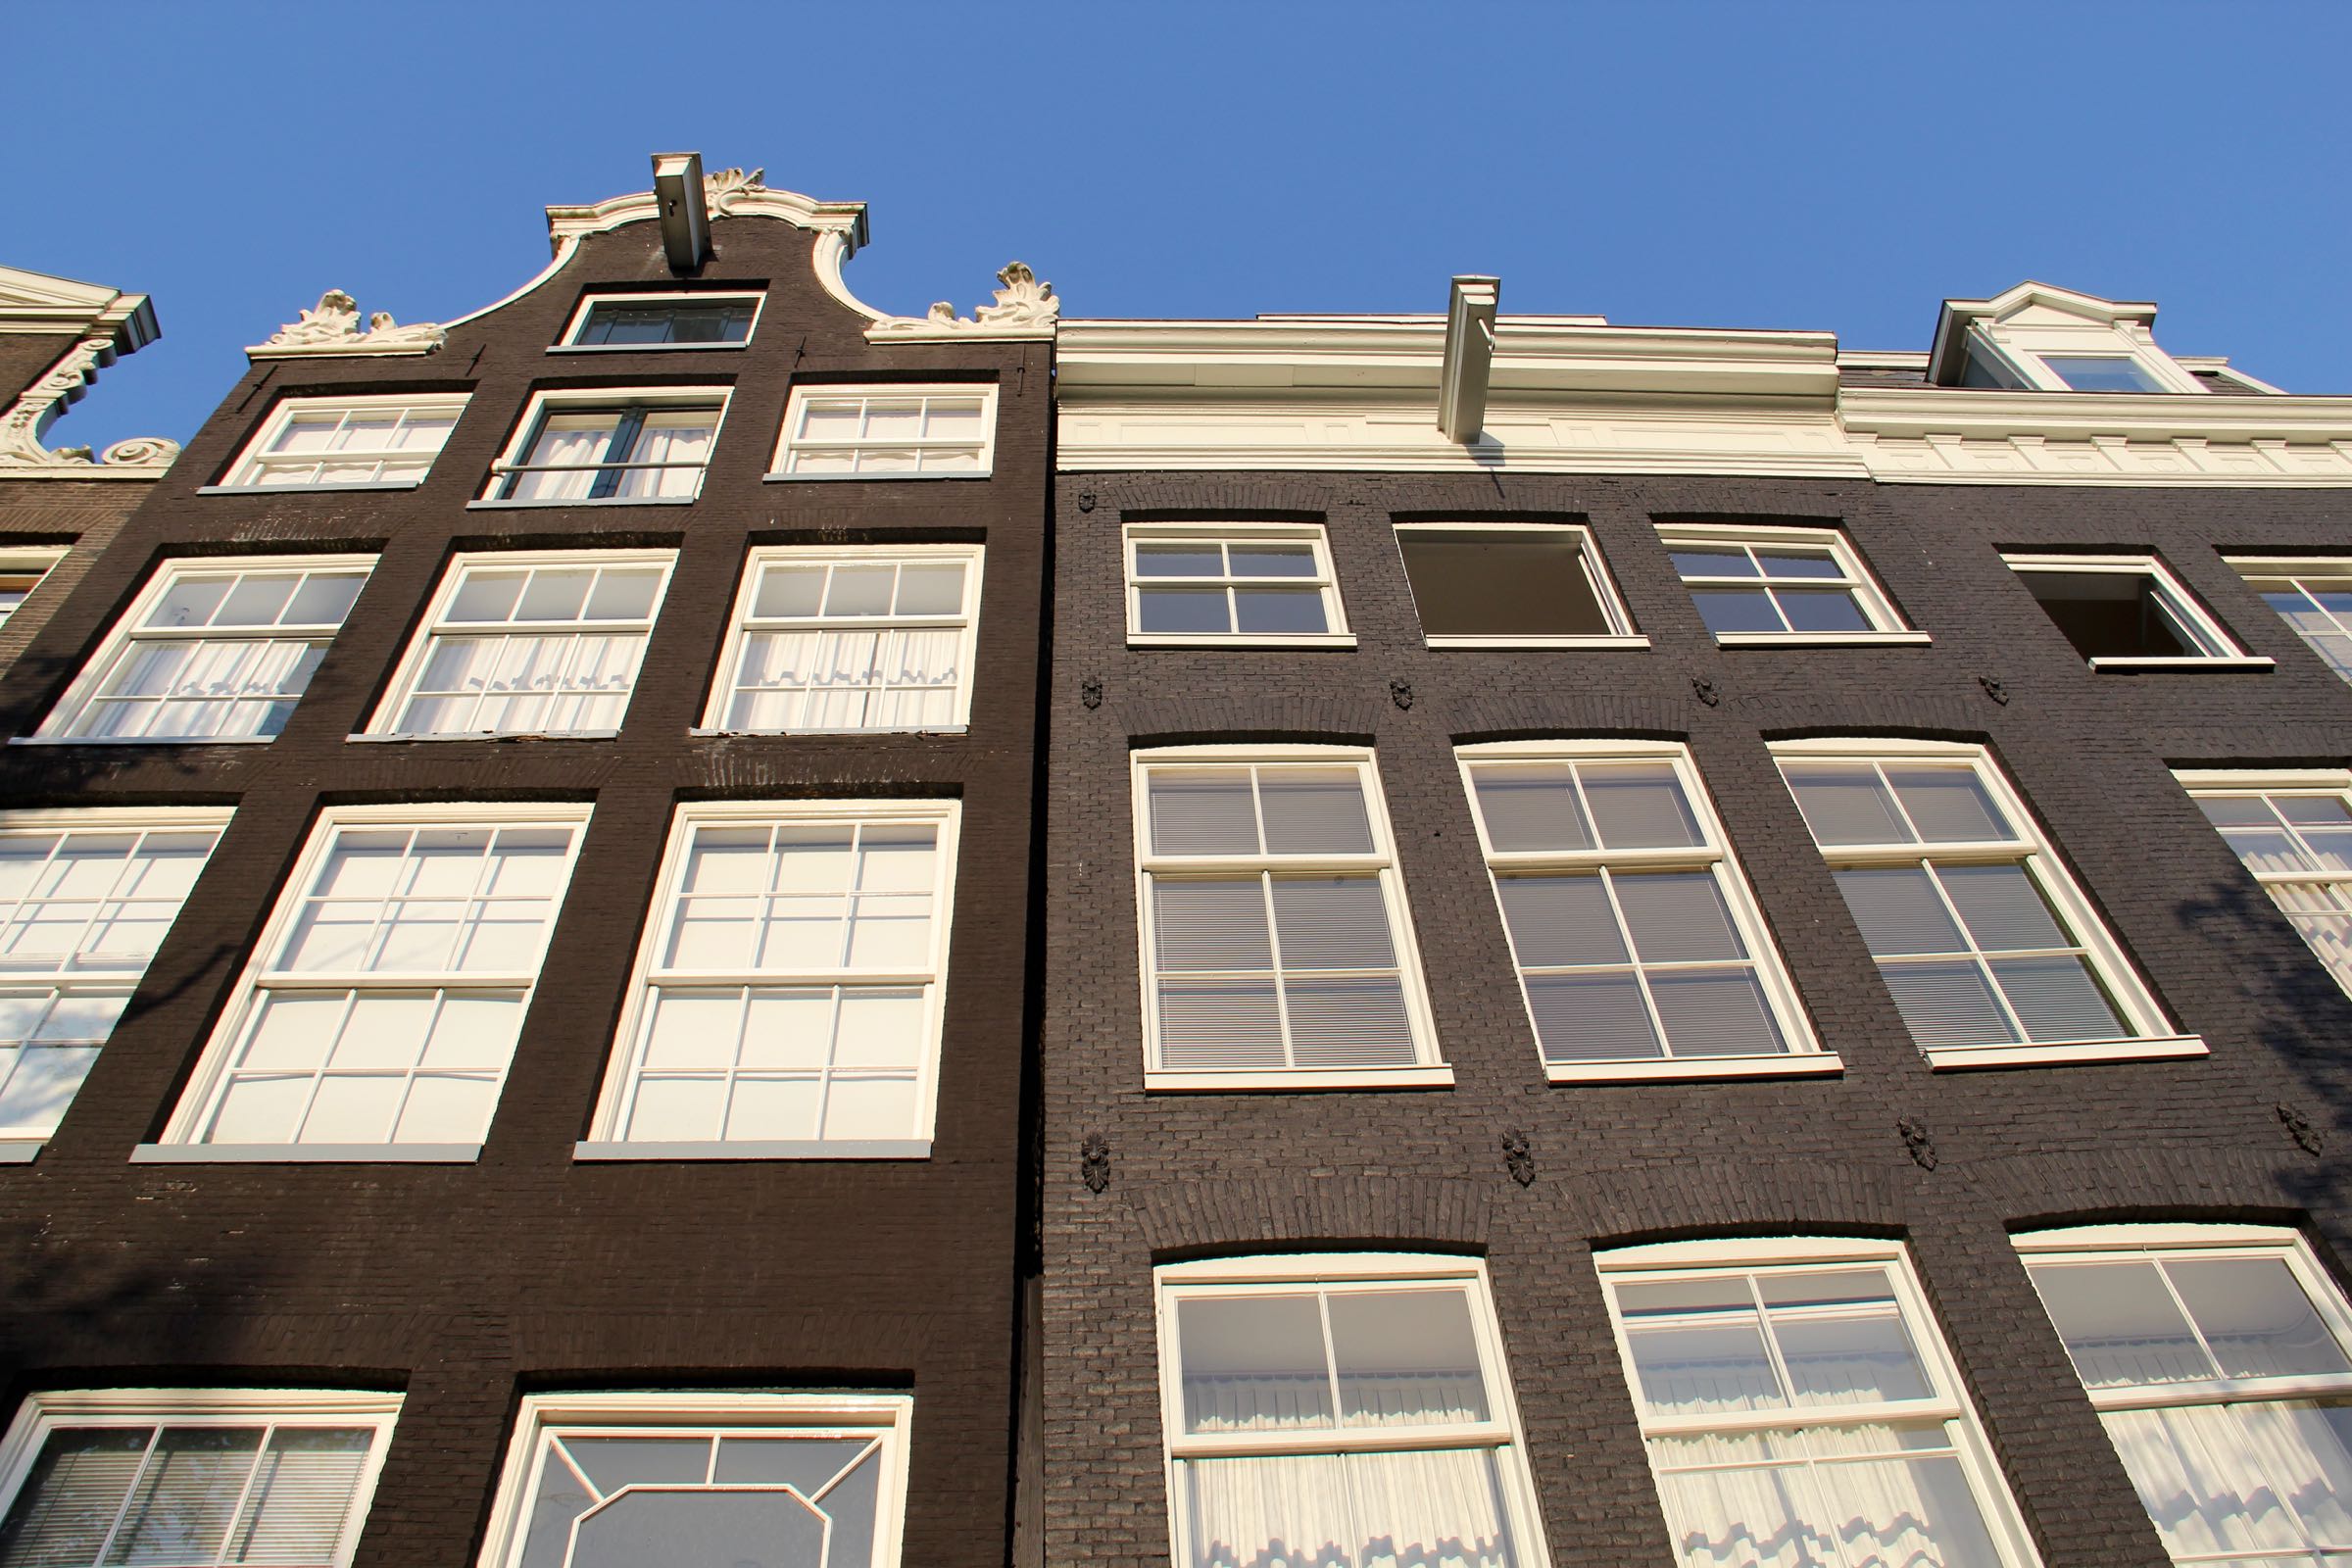 Häuser der Prinsengracht, Amsterdam, Nordholland, Niederlande